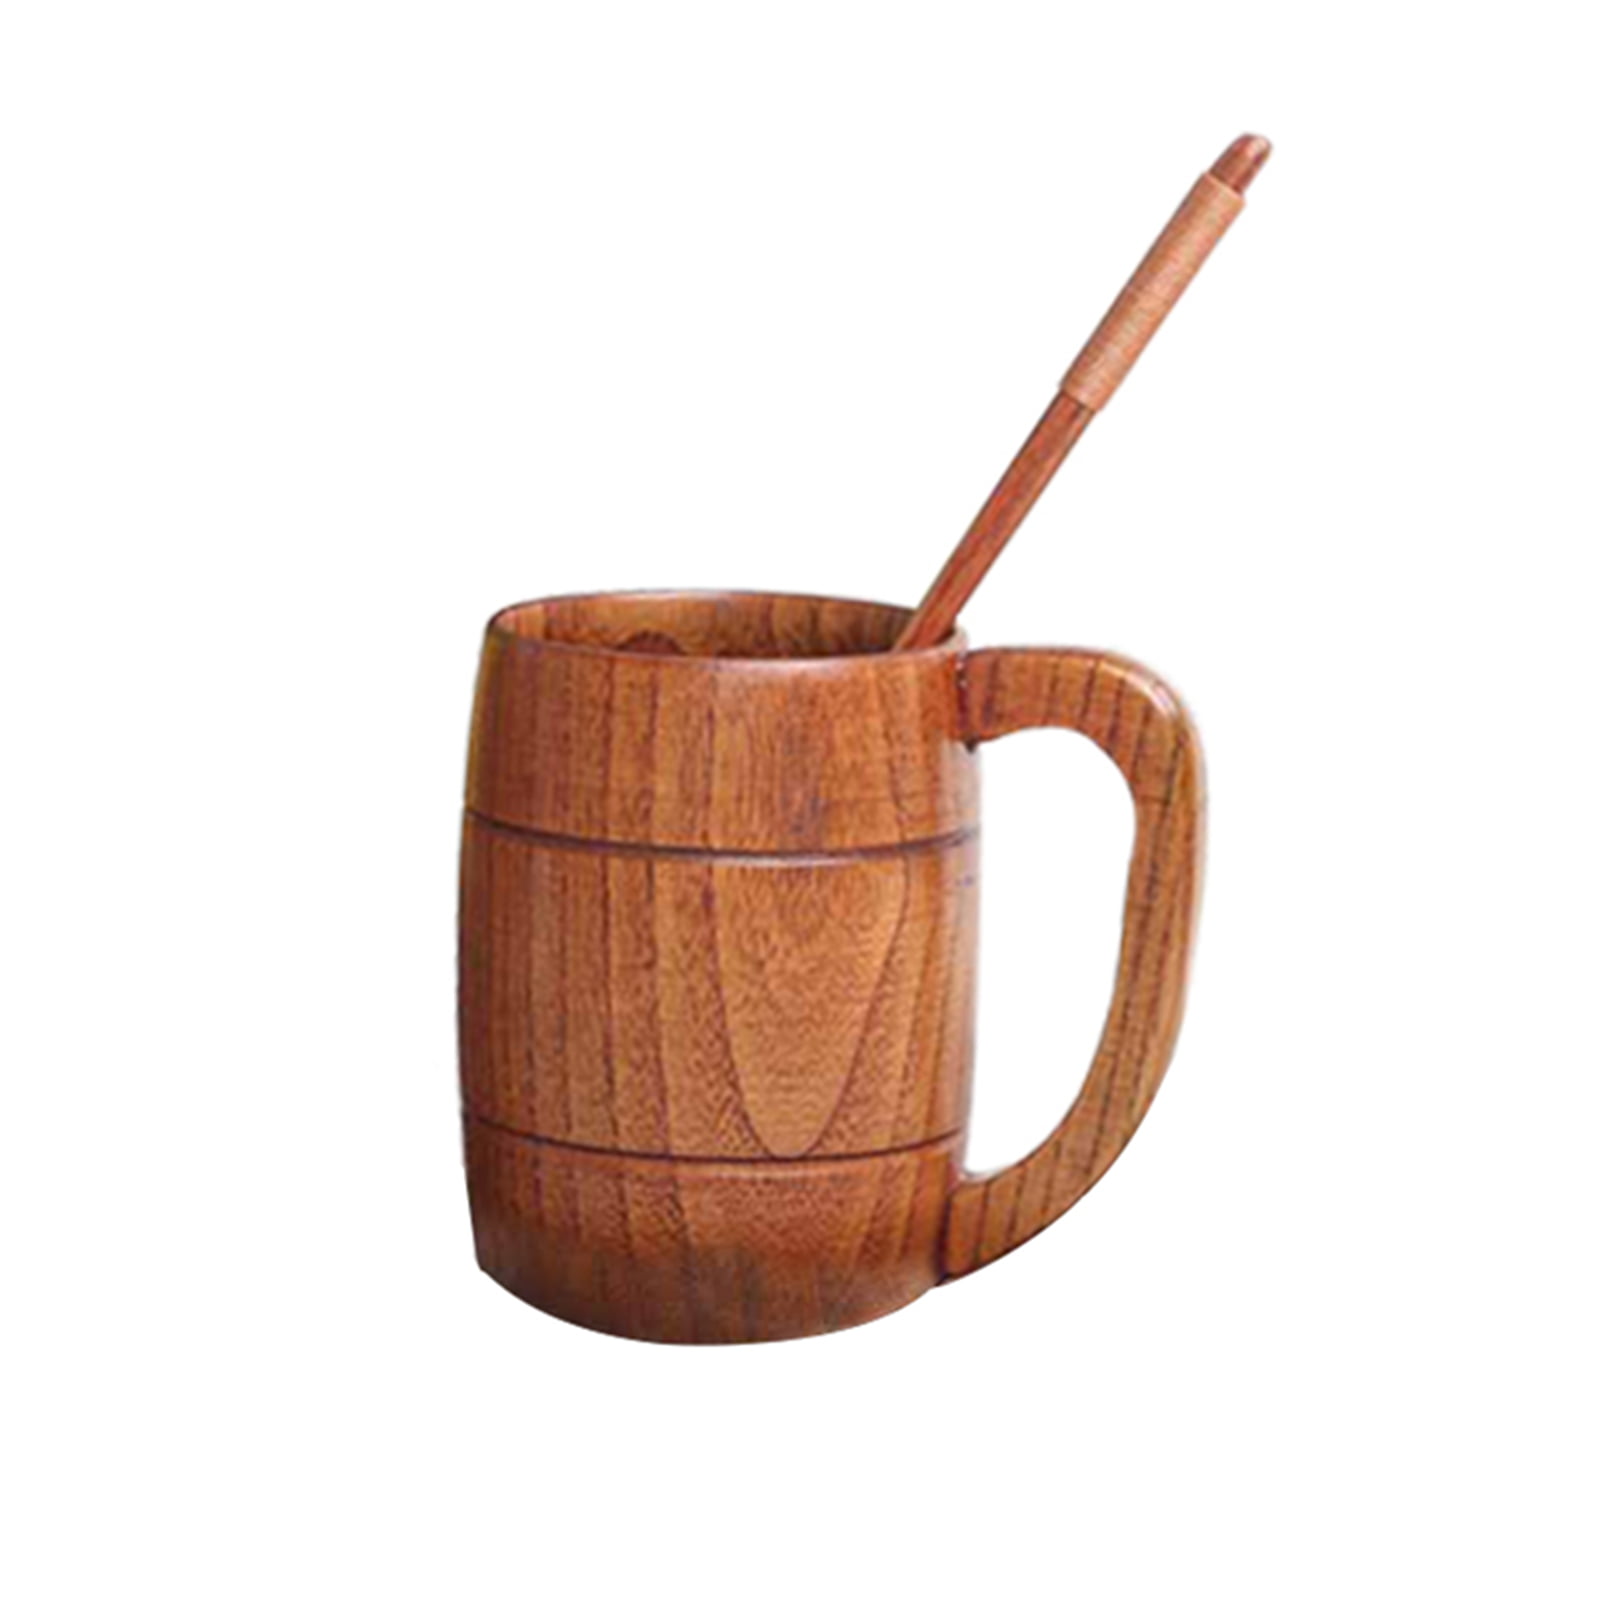 Vintage Bar Cup Beer Mug Wood,Wooden Coffee Mug Stainless Steel Beer Mug With Wood,Handmade Wooden Beer Mug with 18oz-500ml Great Beer Gift Ideas Wooden Beer Tankard for Unisex Wooden Mug